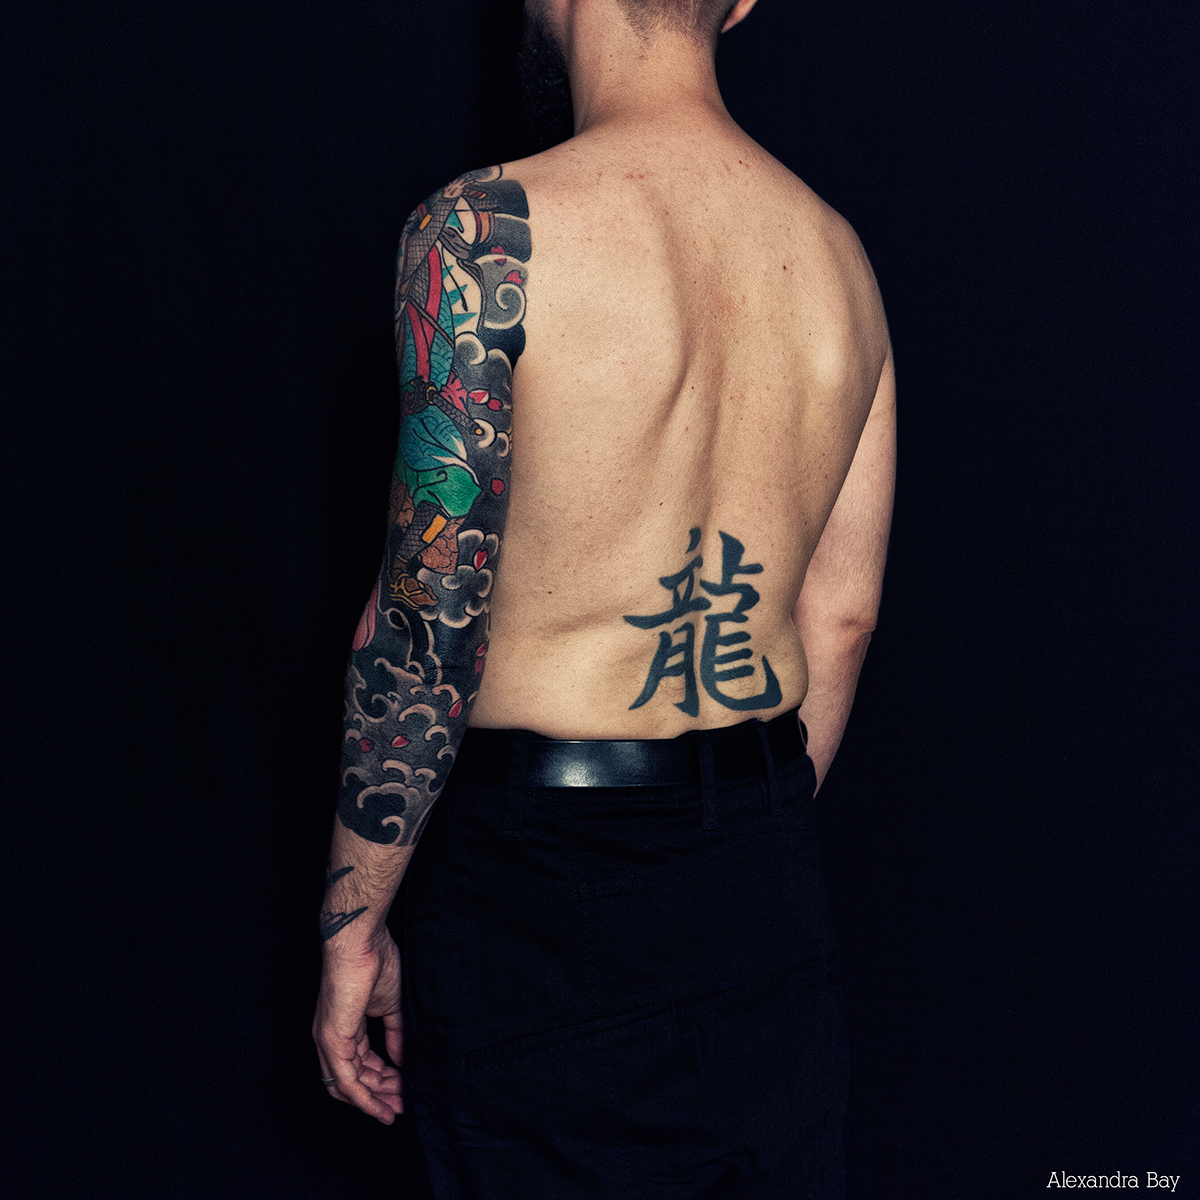 tattoo tattooer japonese japonese tattooer japonese tattoo fatline tattoo club twix twix fatline